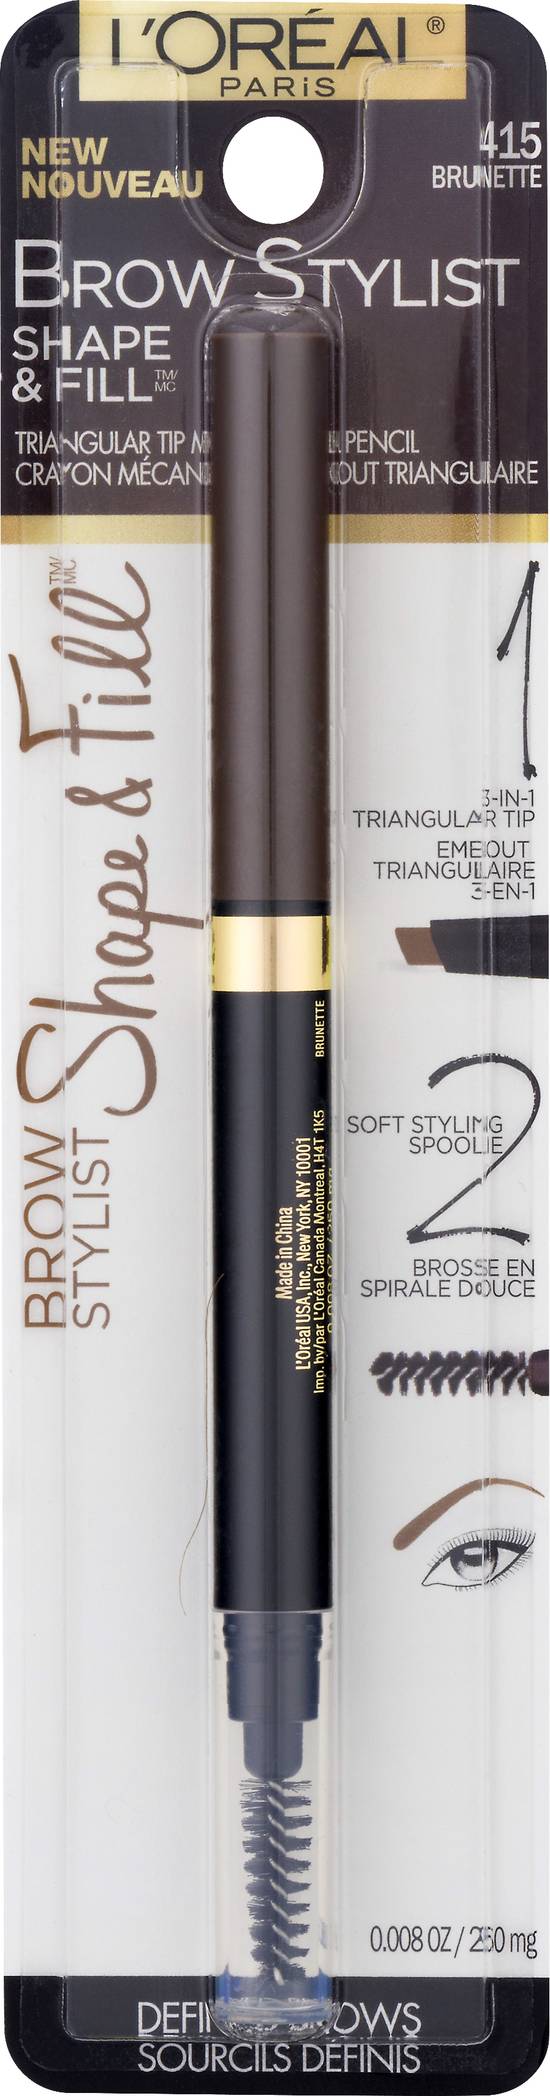 L'oréal Brow Stylist Shape & Fill 415 Brunette Pencil